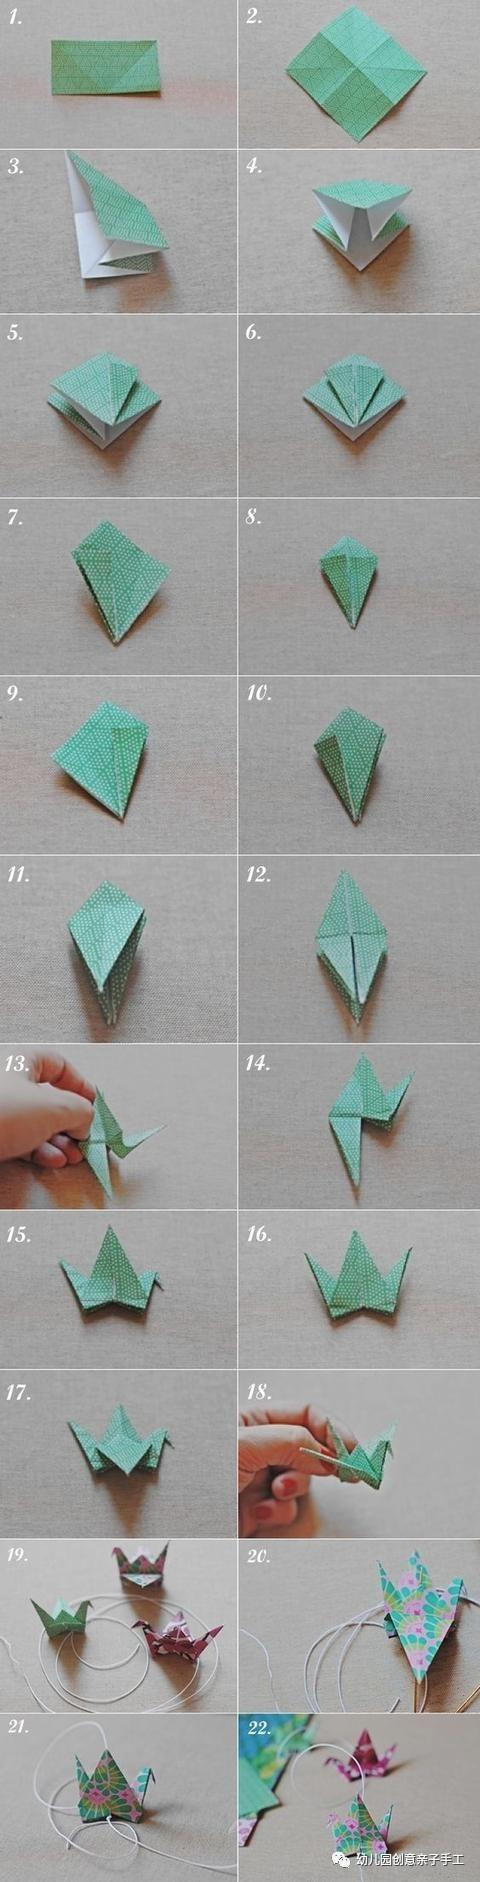 千纸鹤折叠方法图解图片